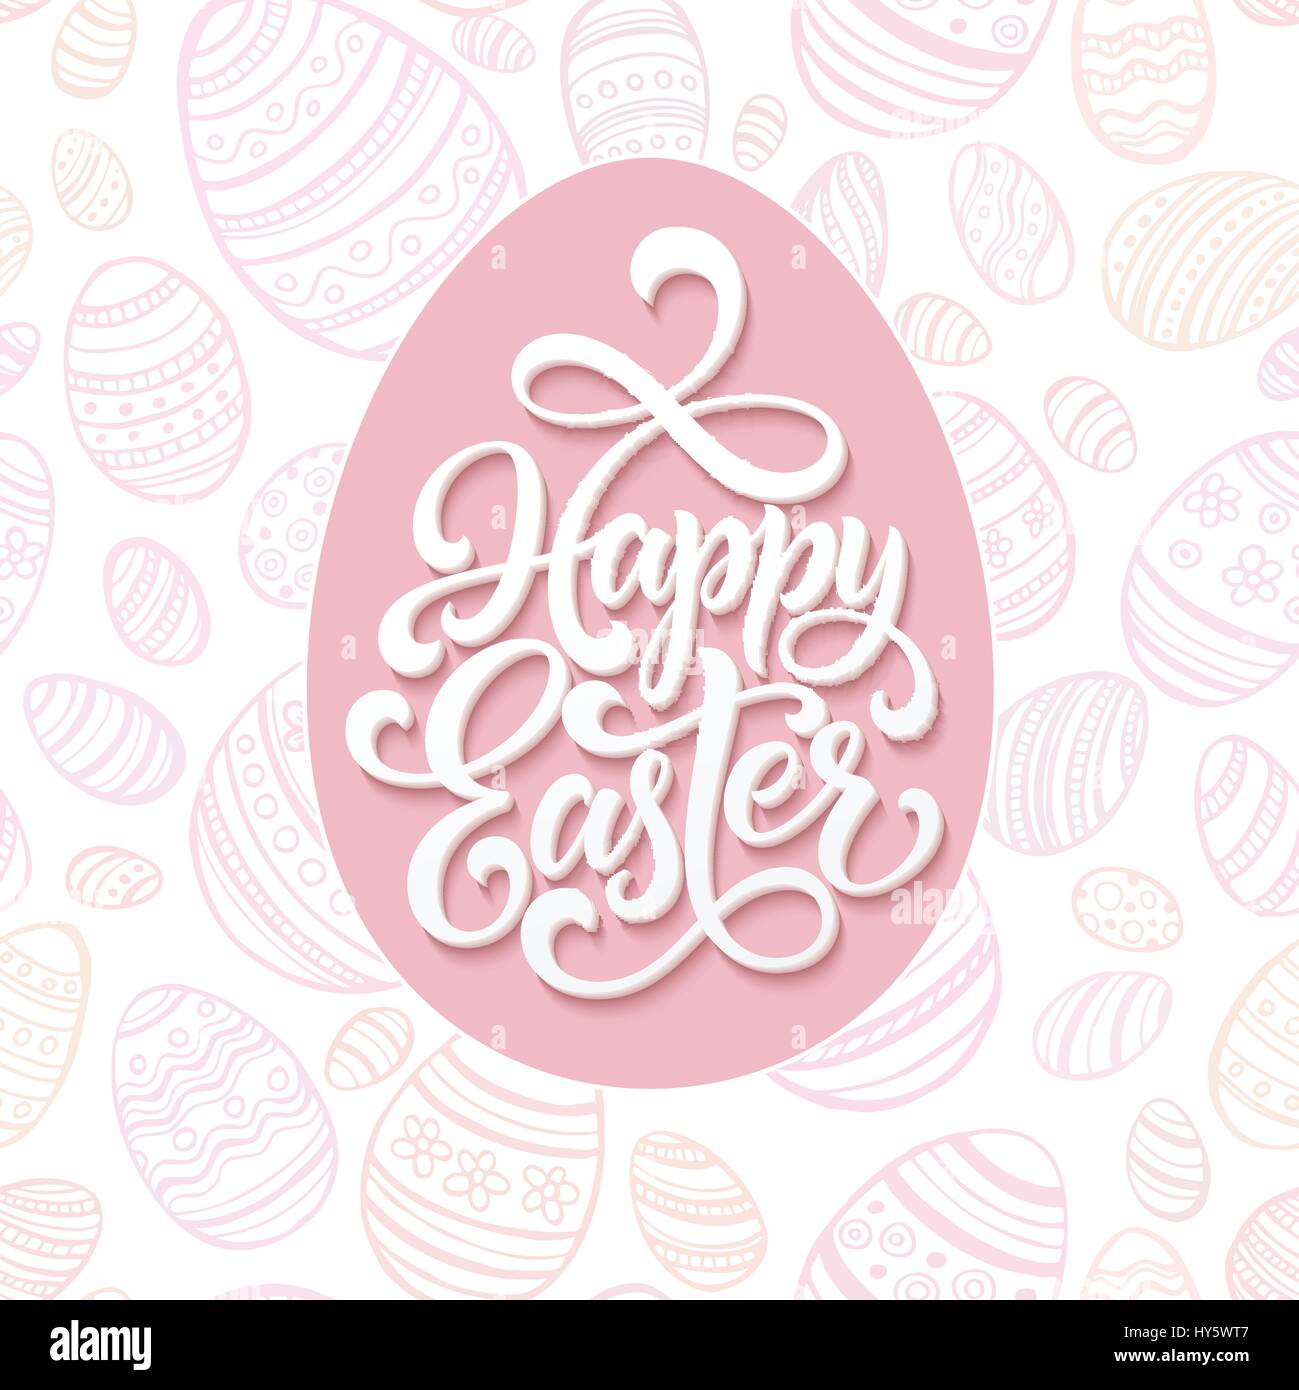 Happy Easter-Schriftzug auf rosa Musterdesign Eiern Hintergrund. Vektor-illustration Stock Vektor